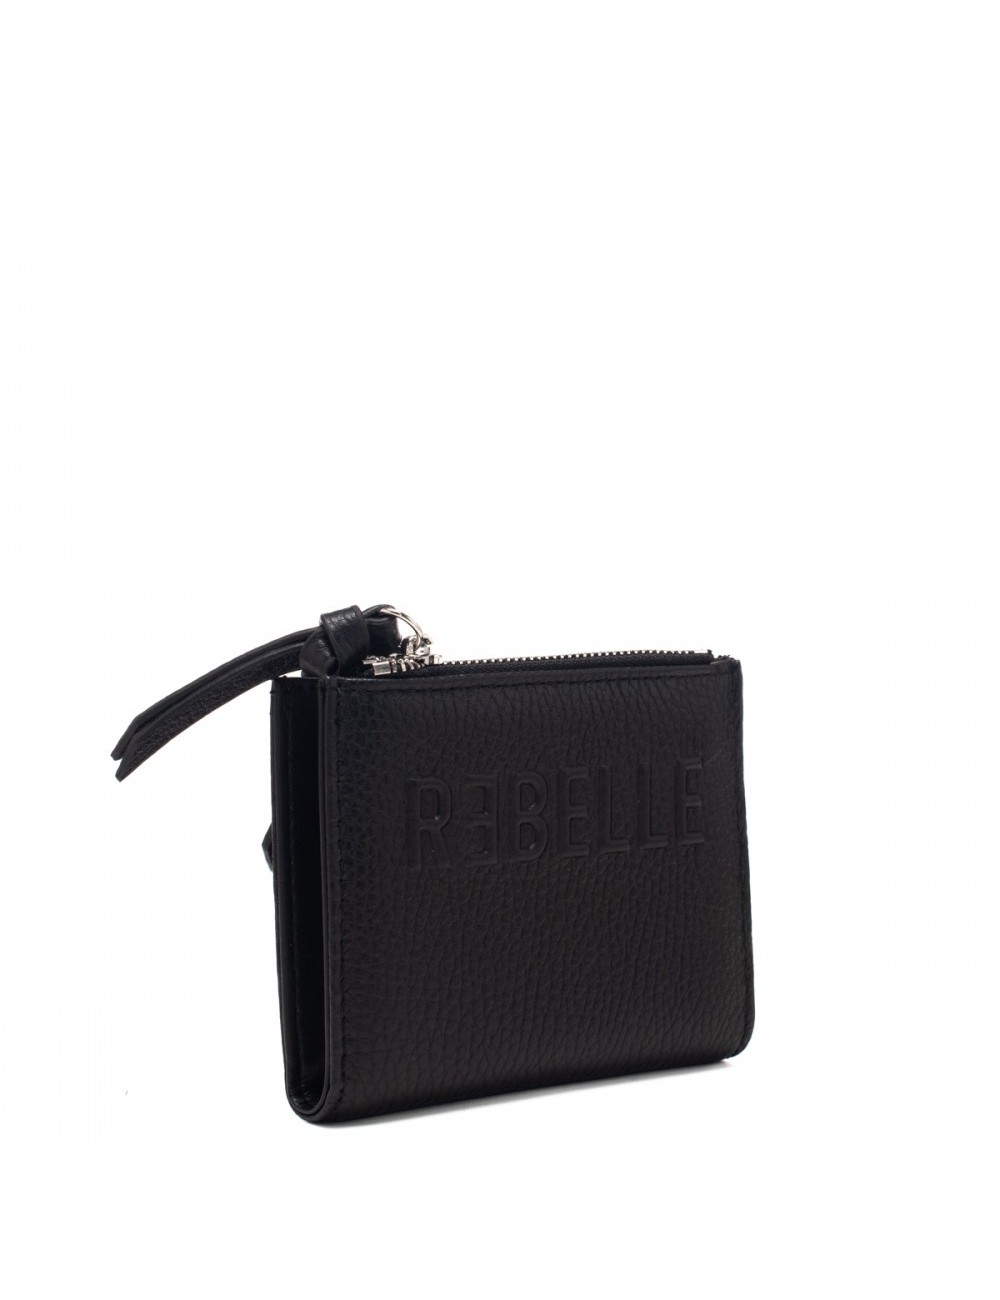 Rebelle - PORTAFOGLIO CON PORTA TESSERE - Donna - SMALL CARD HOL/BLACK